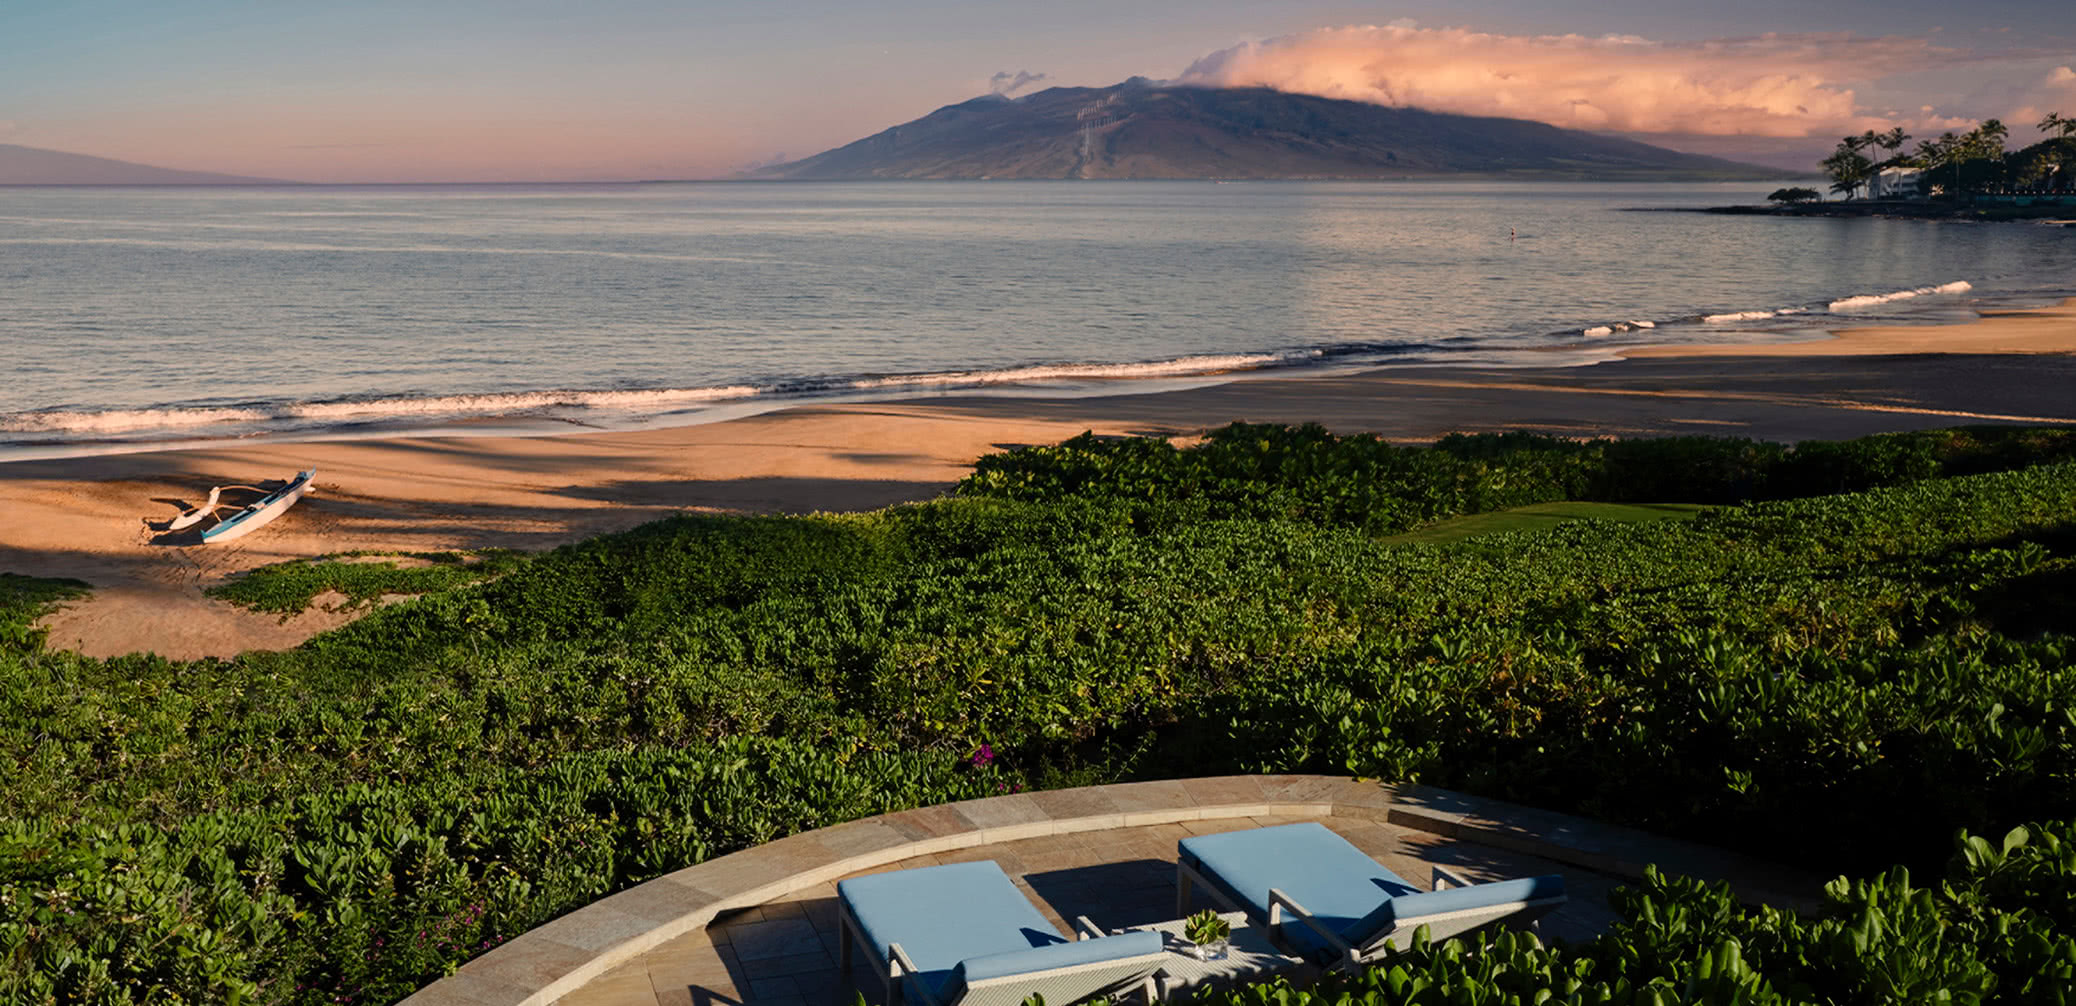 Top 10 Best Luxury Hotels In Maui